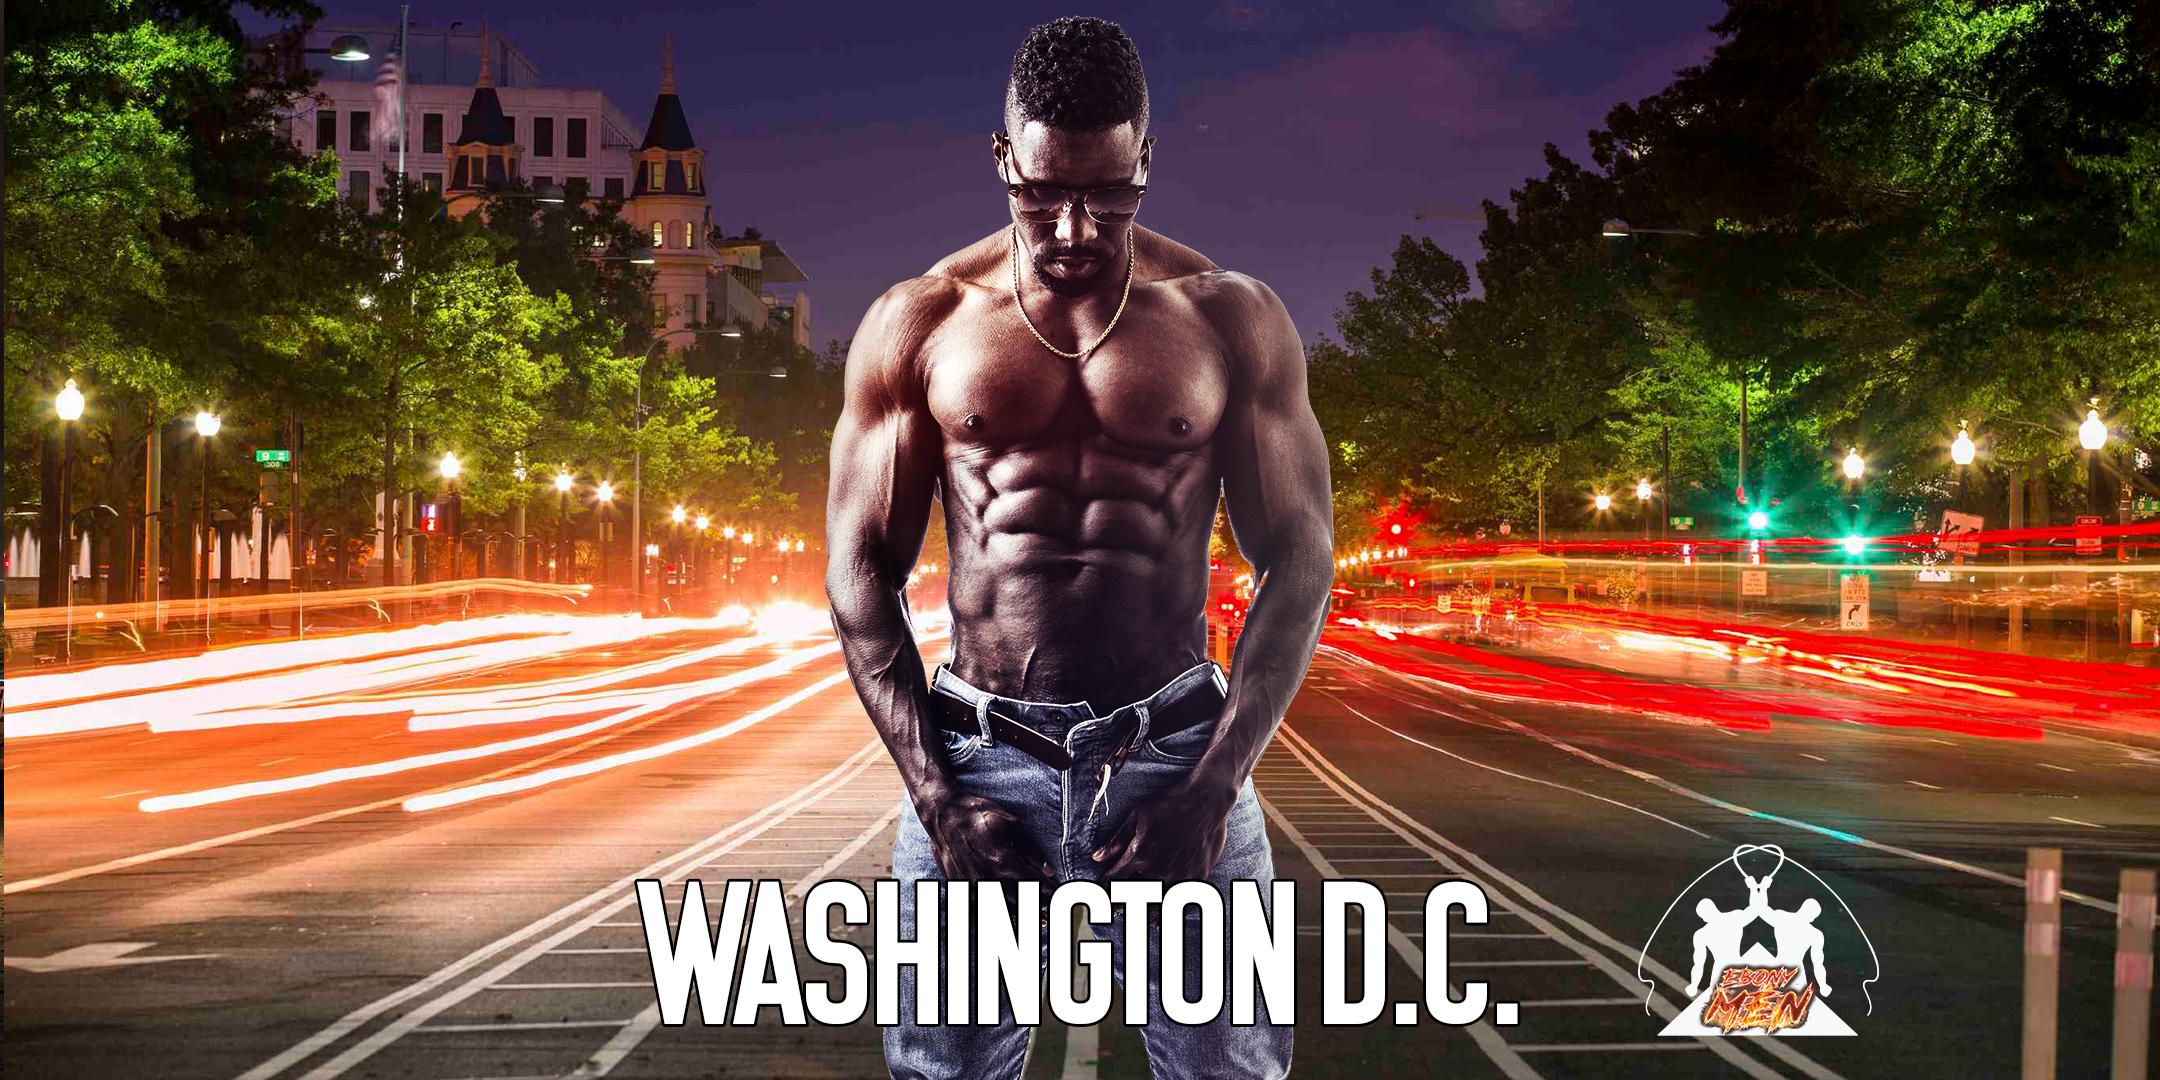 Ebony Men Black Male Revue Strip Clubs & Black Male Strippers Washington DC 8-10 PM